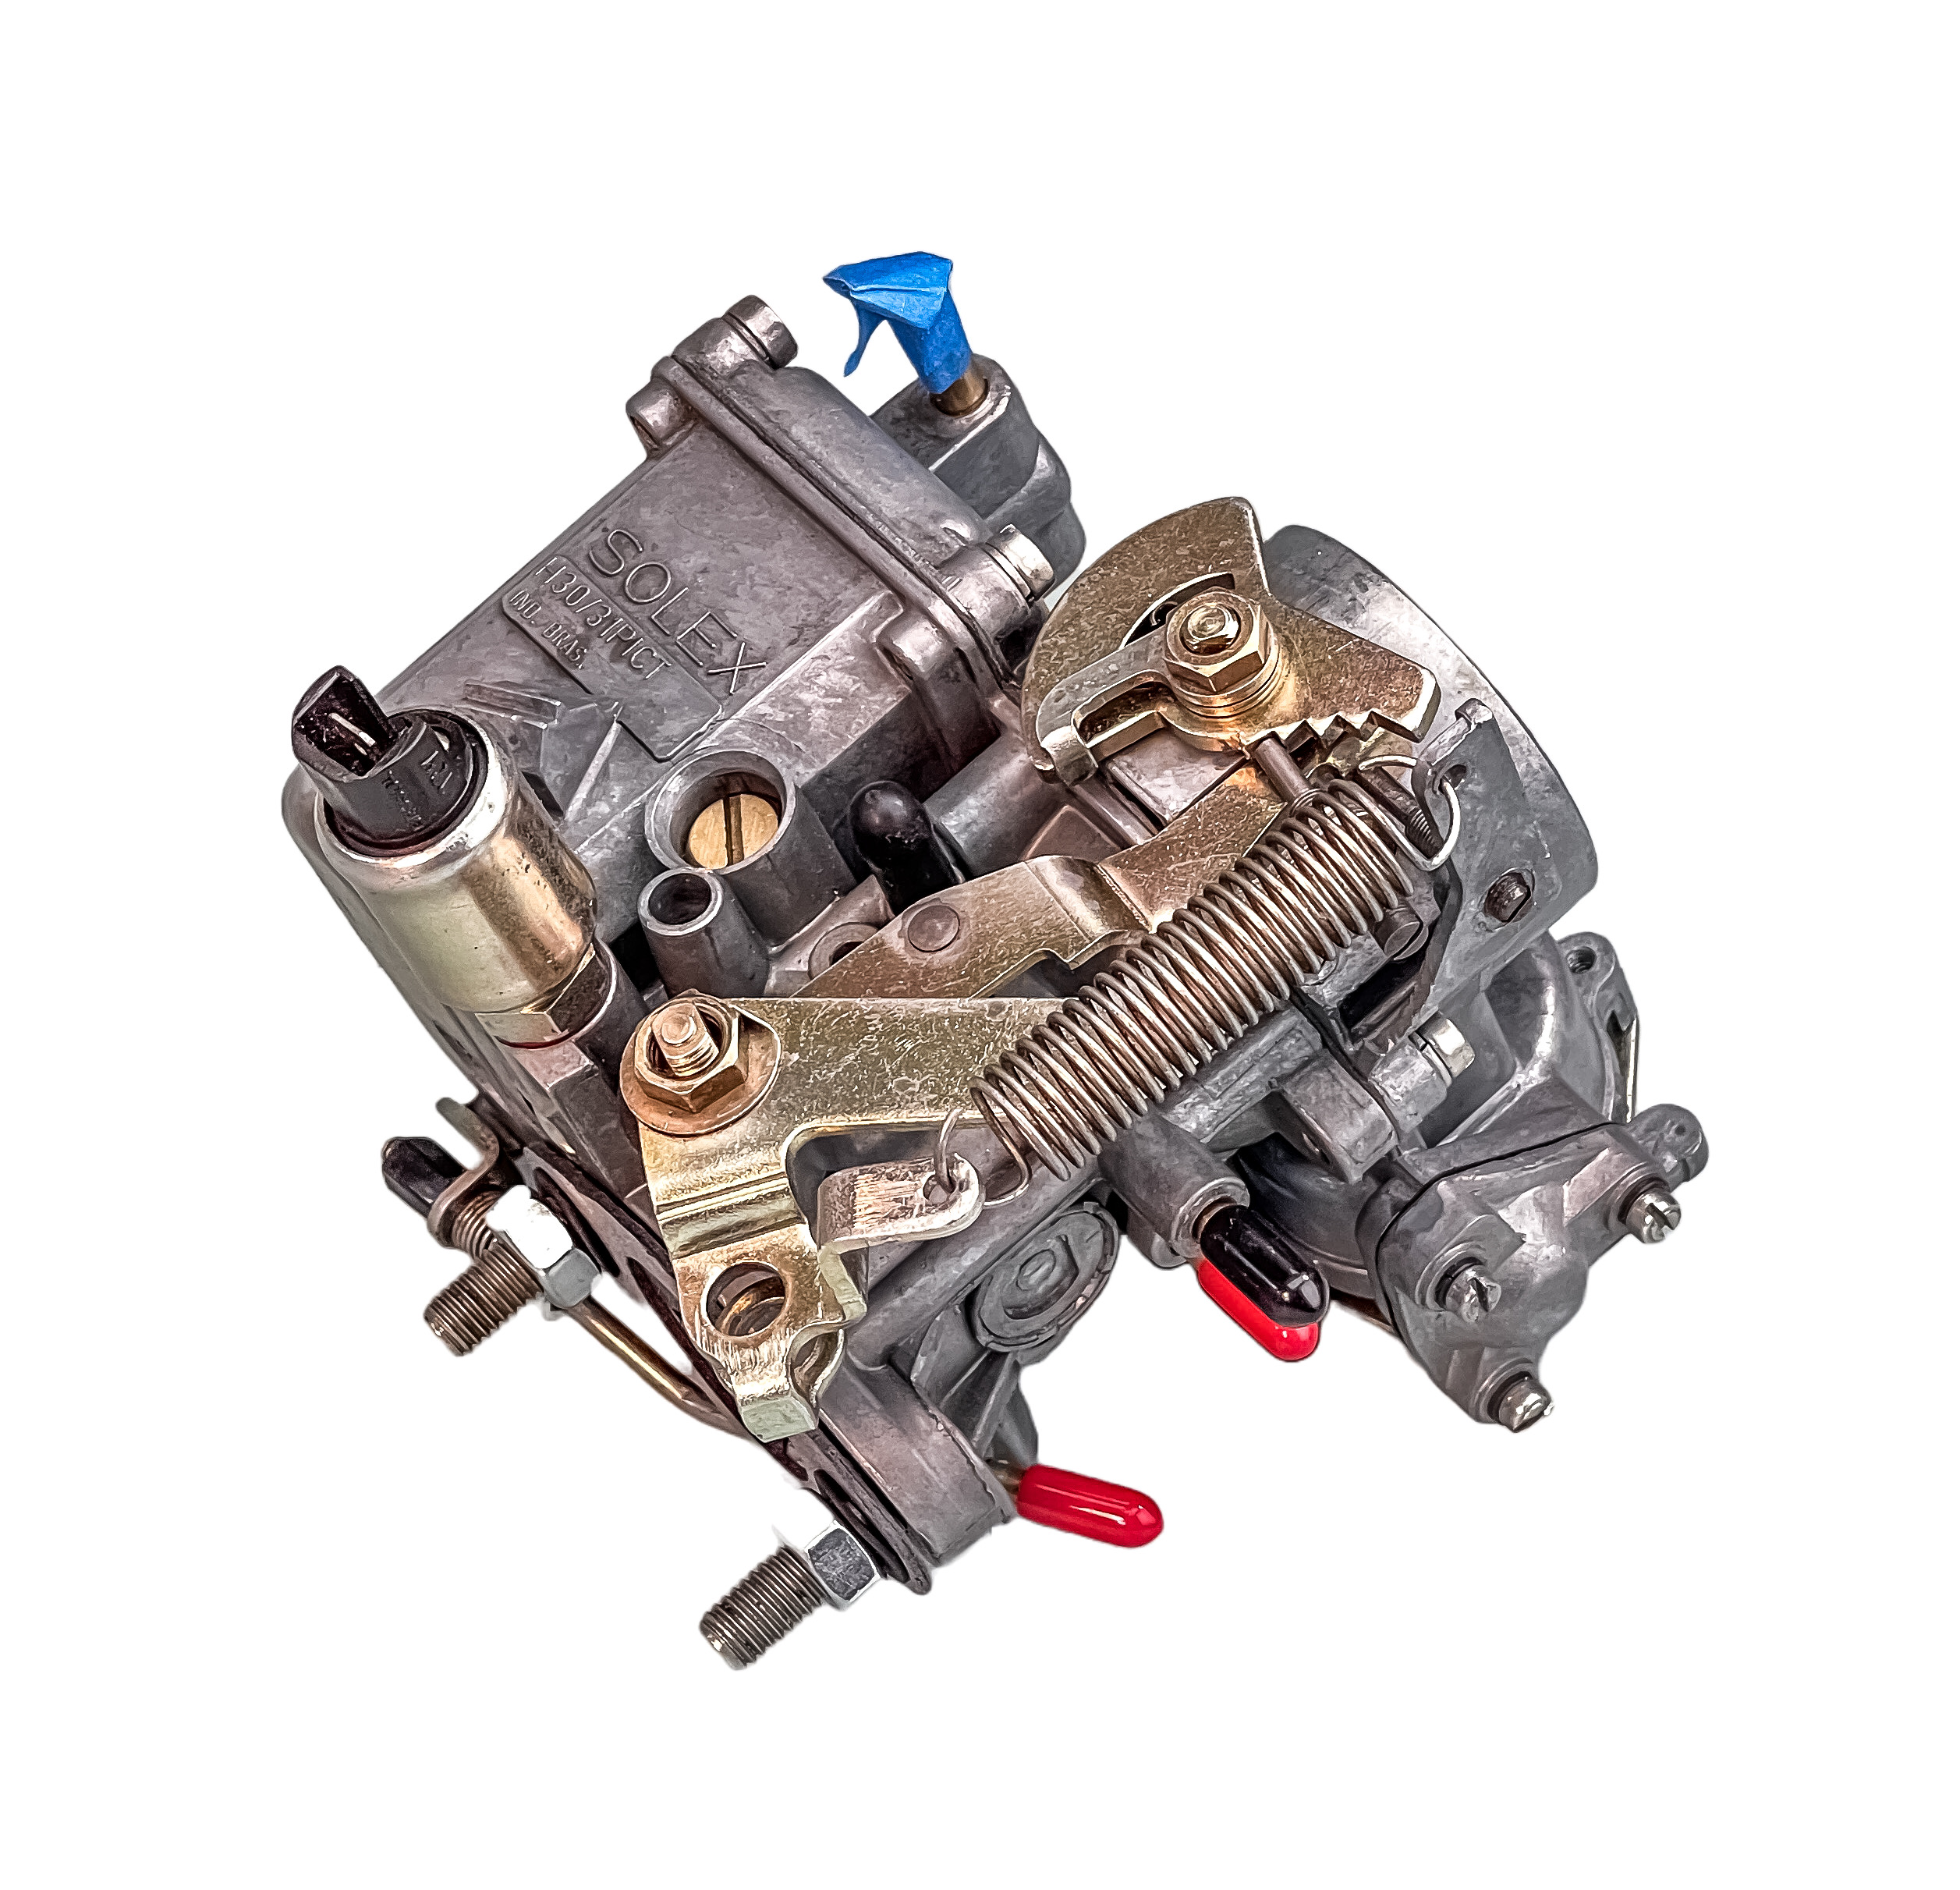 Mofoco Air Cooled VW Carburetor Rebuild Repair Kits